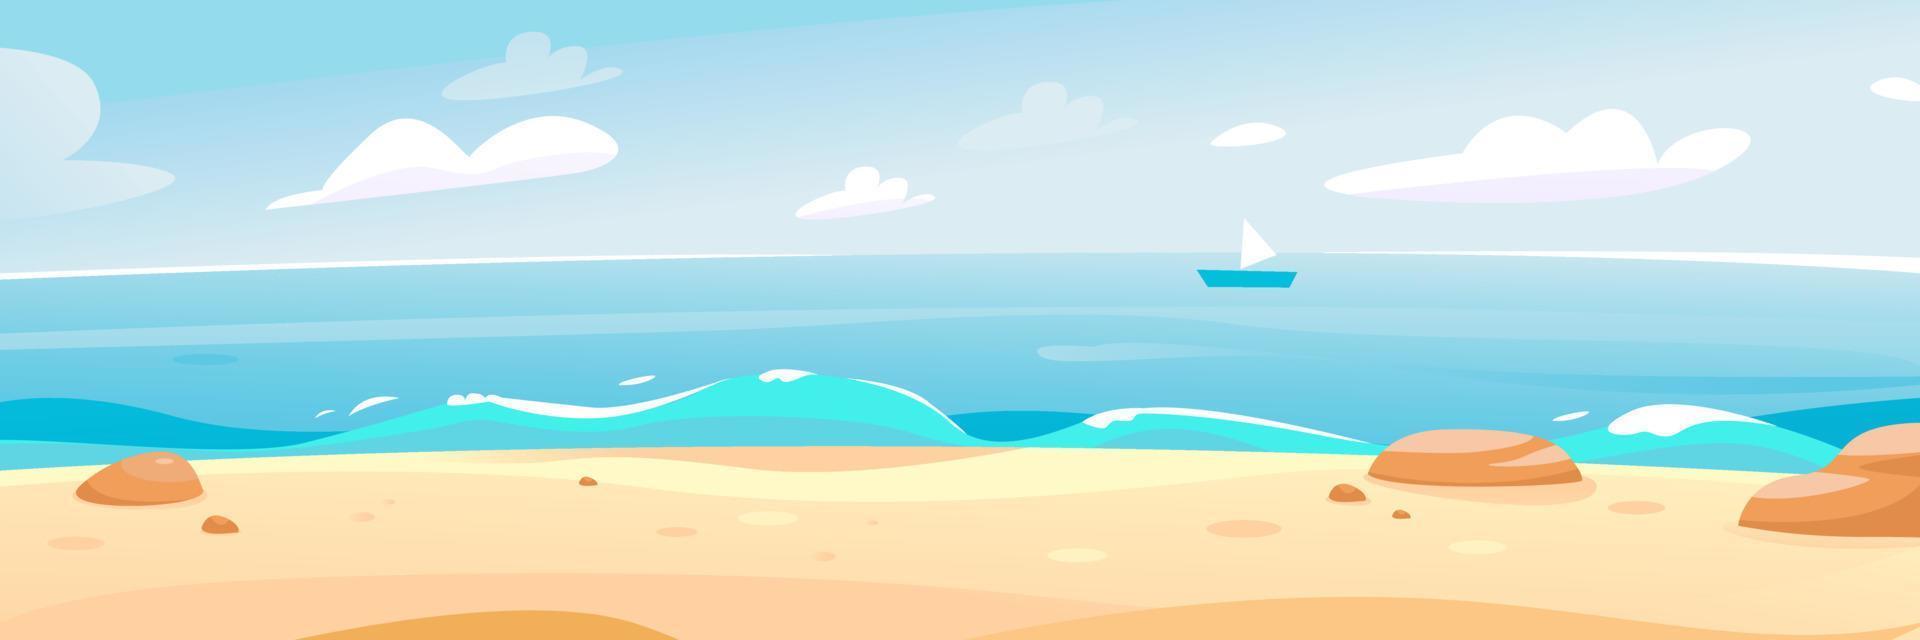 zomer strand aan zee. prachtig zeegezicht. een banner voor een zomervakantie. de zeehorizon. cartoon vectorillustratie vector